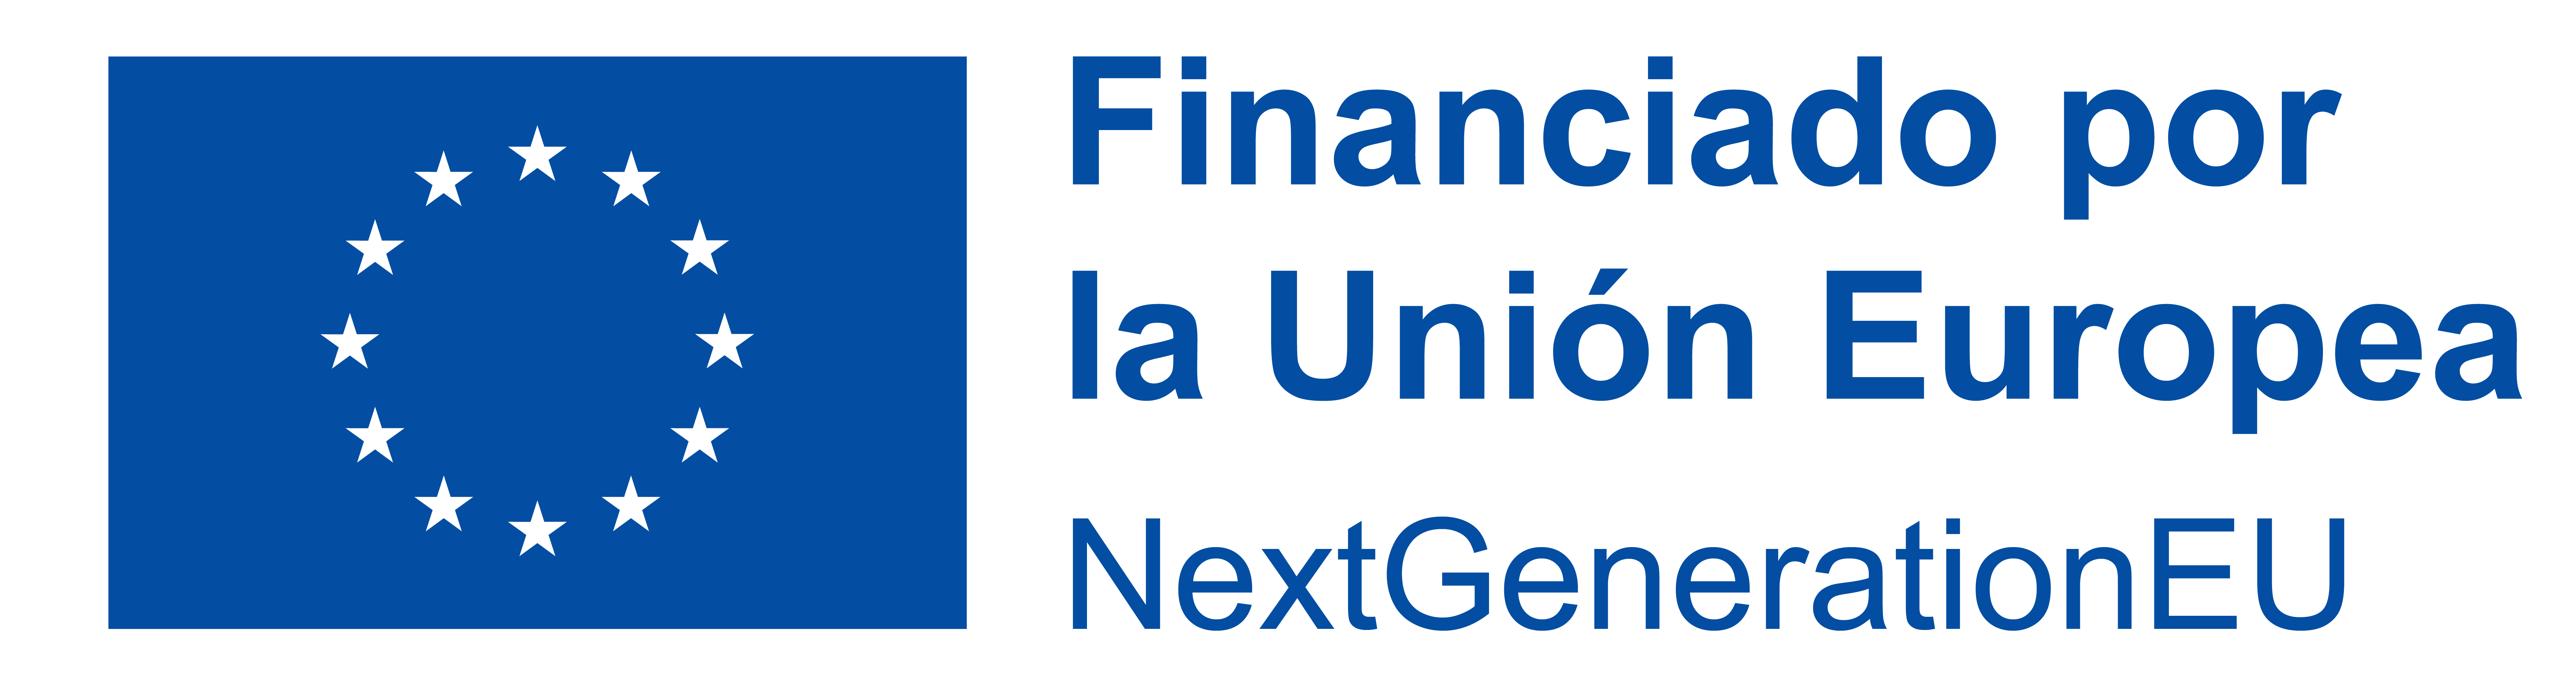 Logo Financiado por la uión europea nextgenerationEU